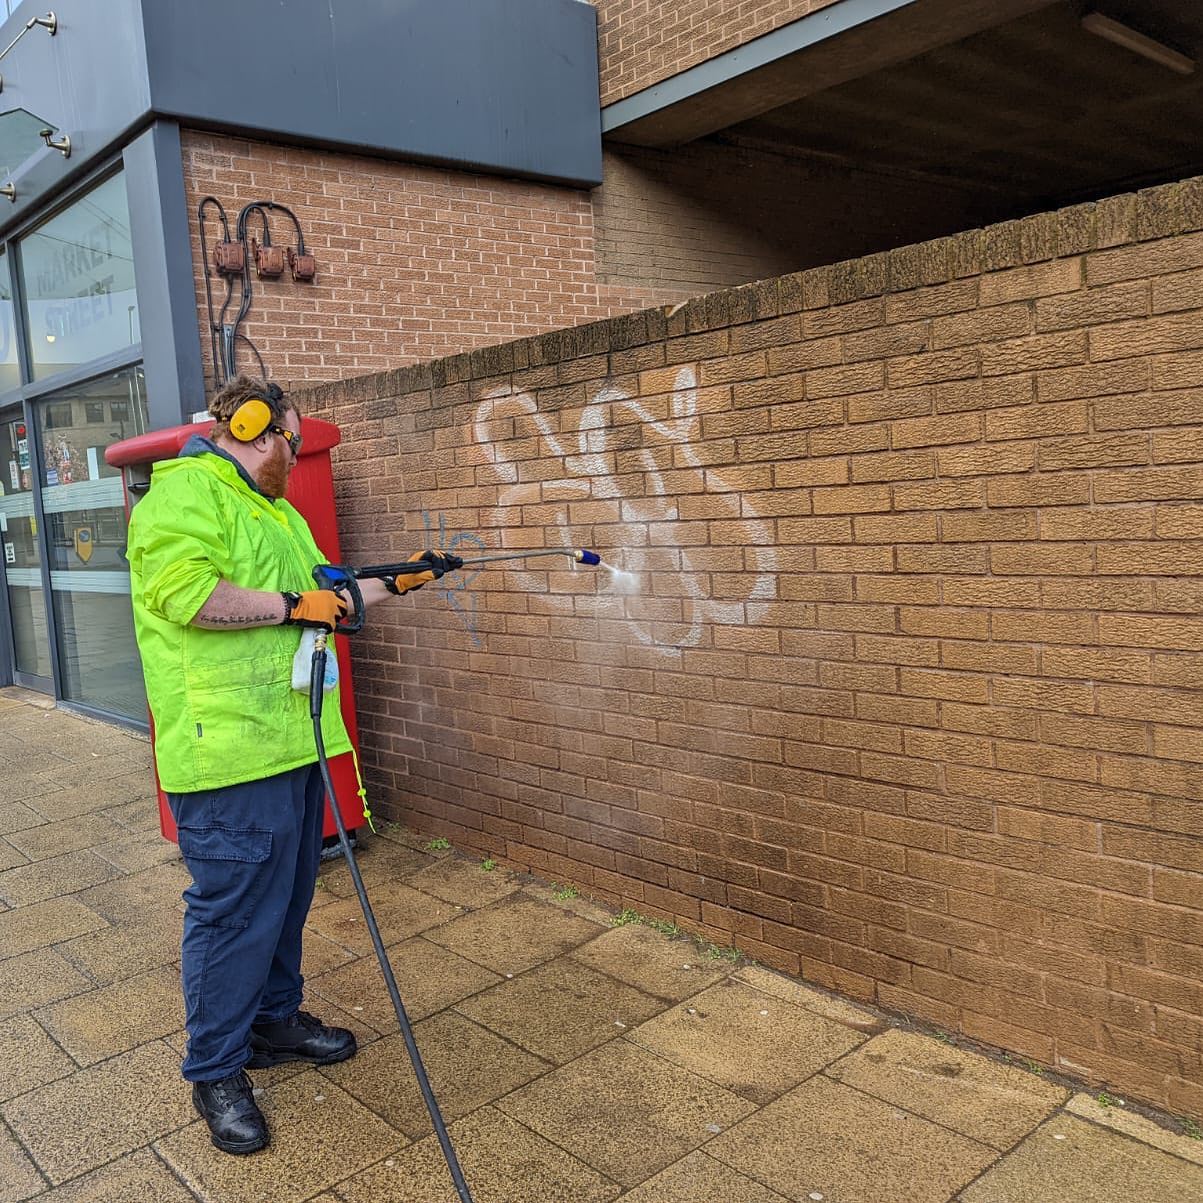 huddersfield bid removing graffiti